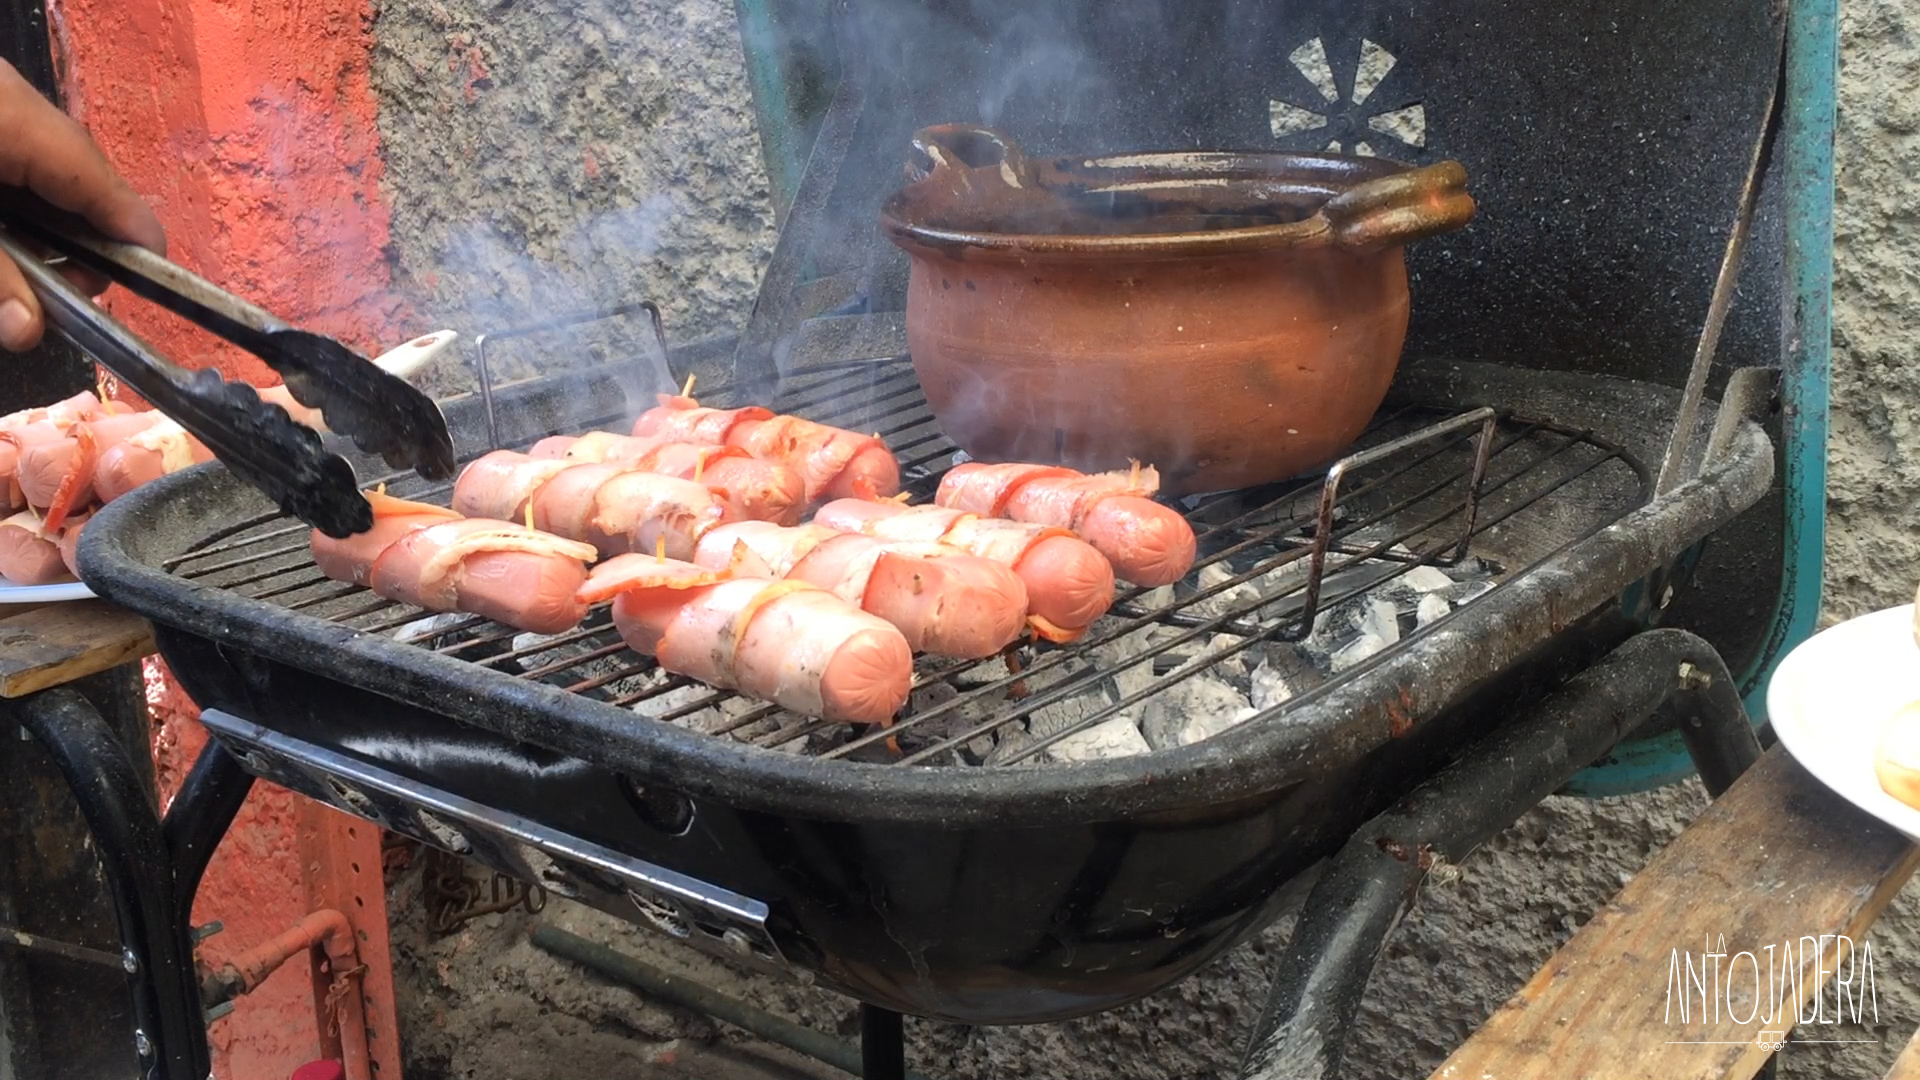 La Antojadera | Hot Dog al Carbón